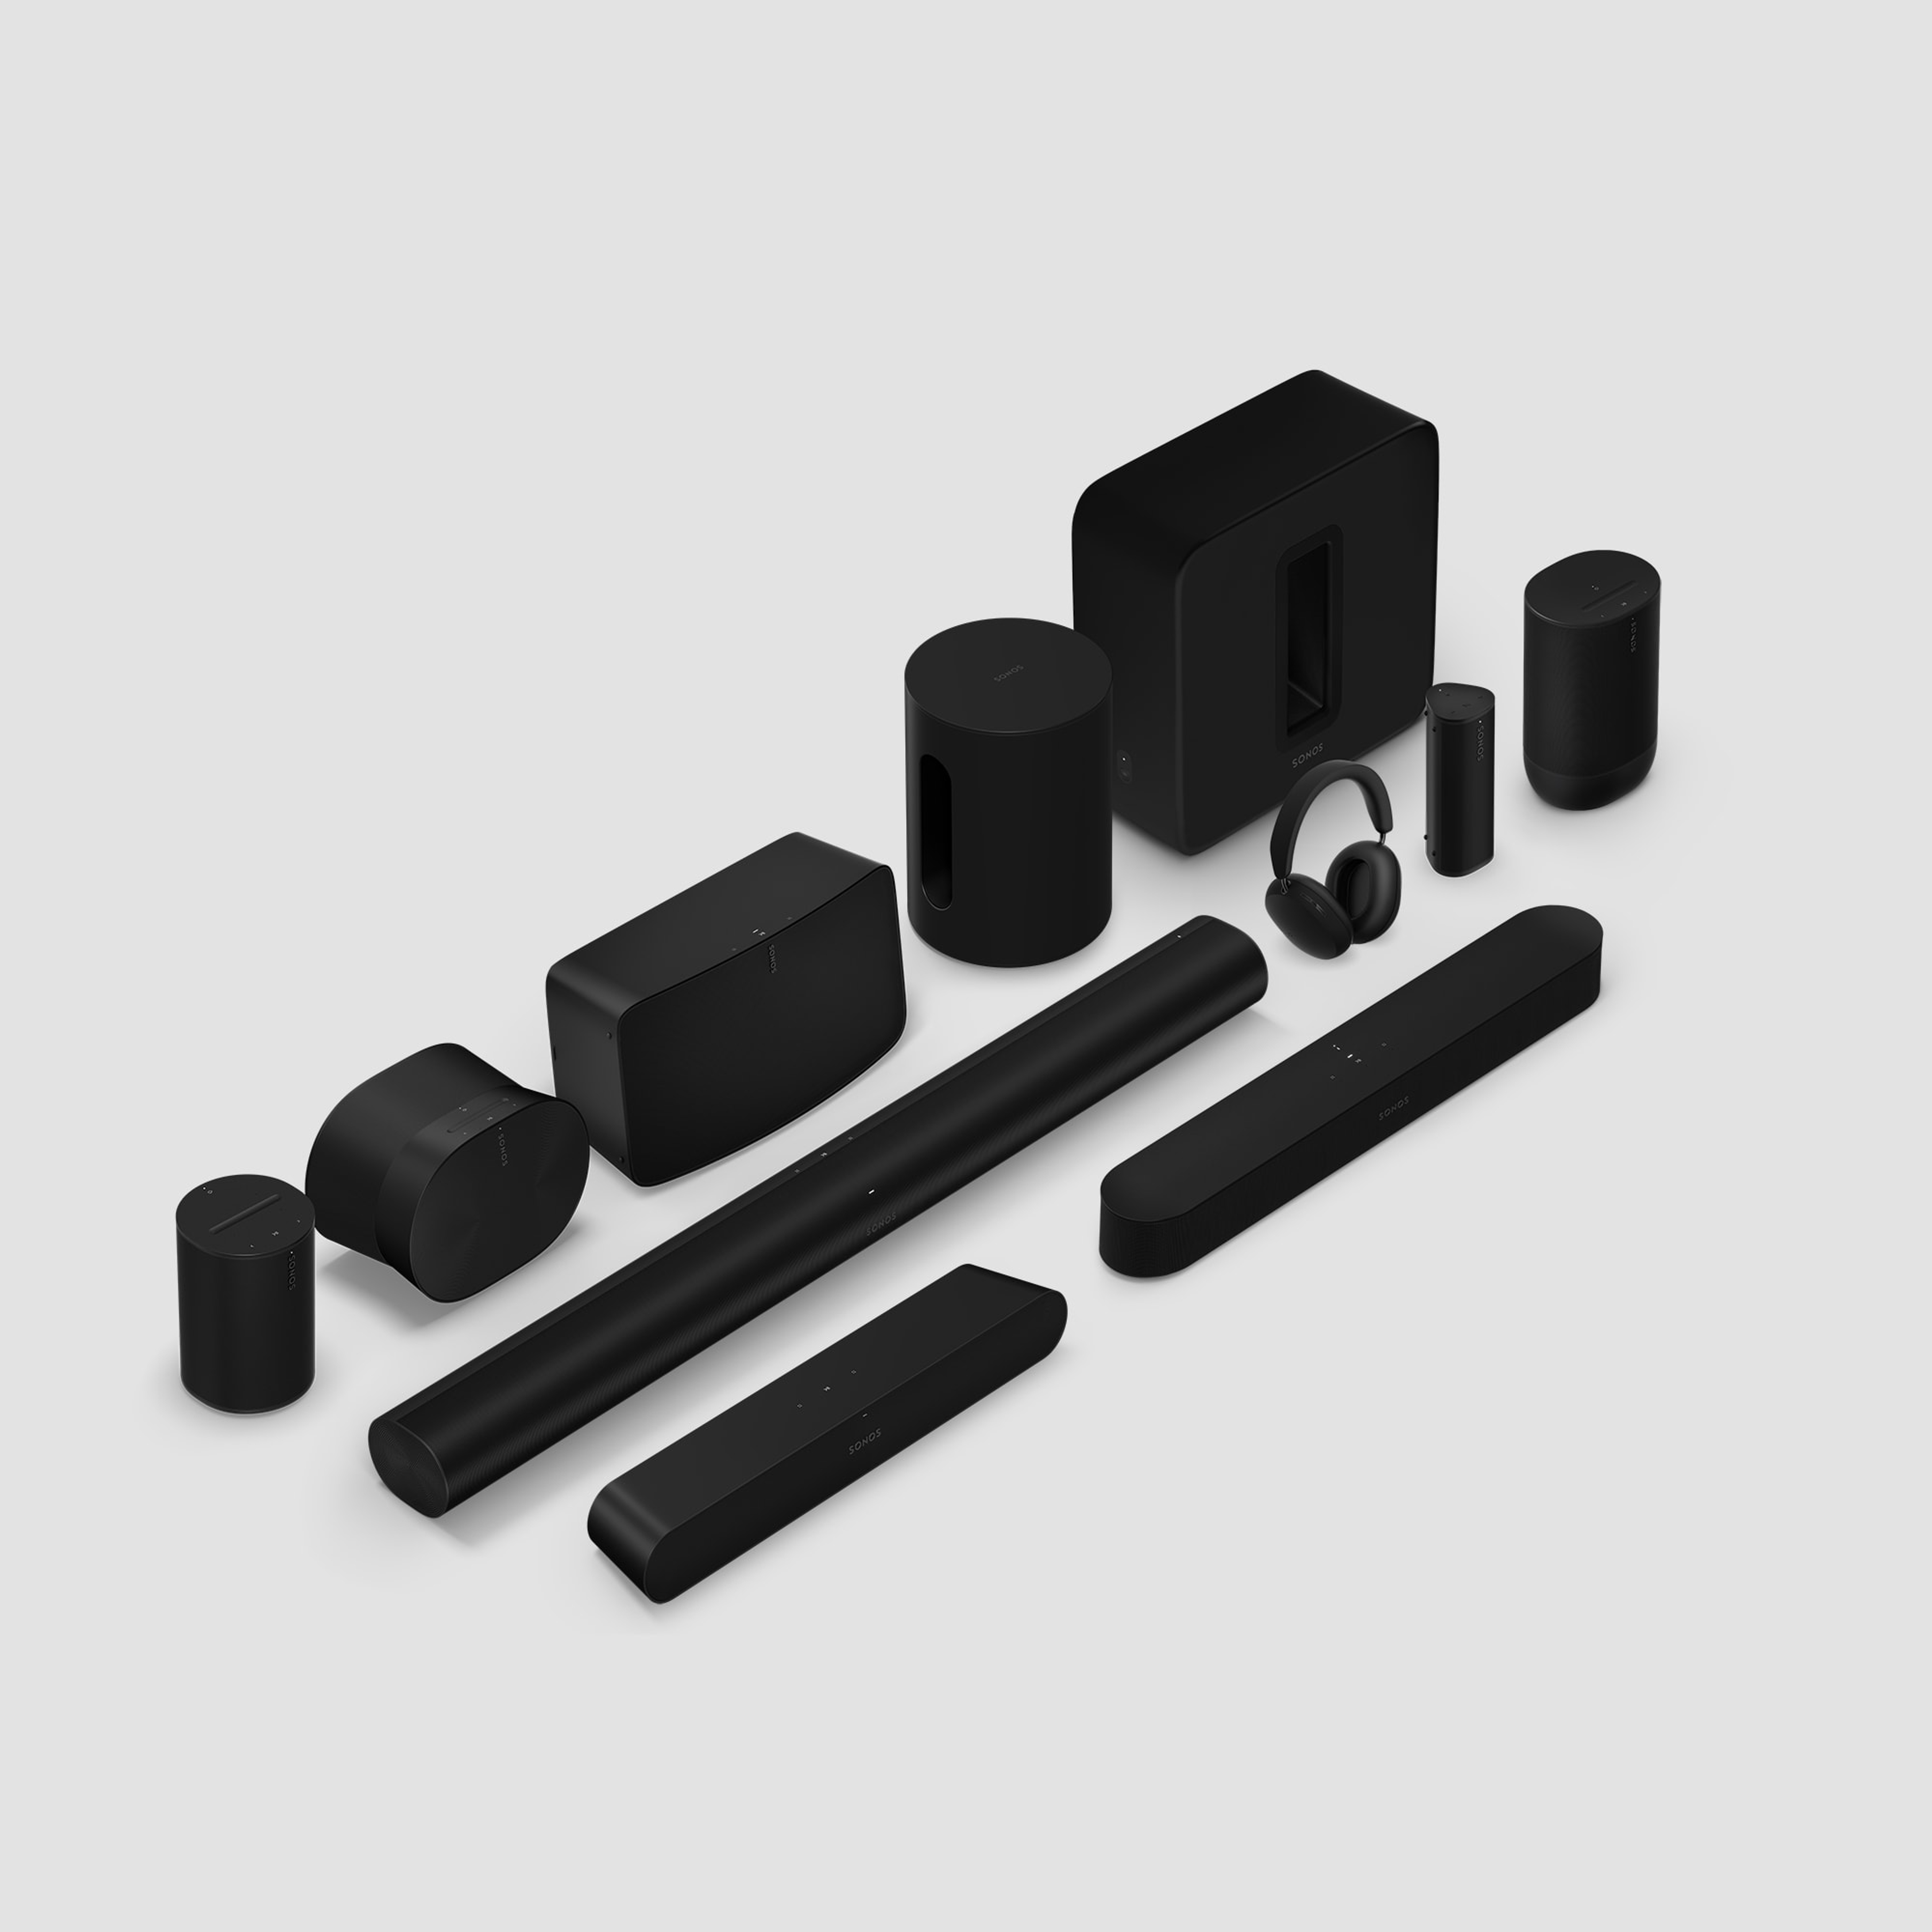 Familia de productos Sonos en negro